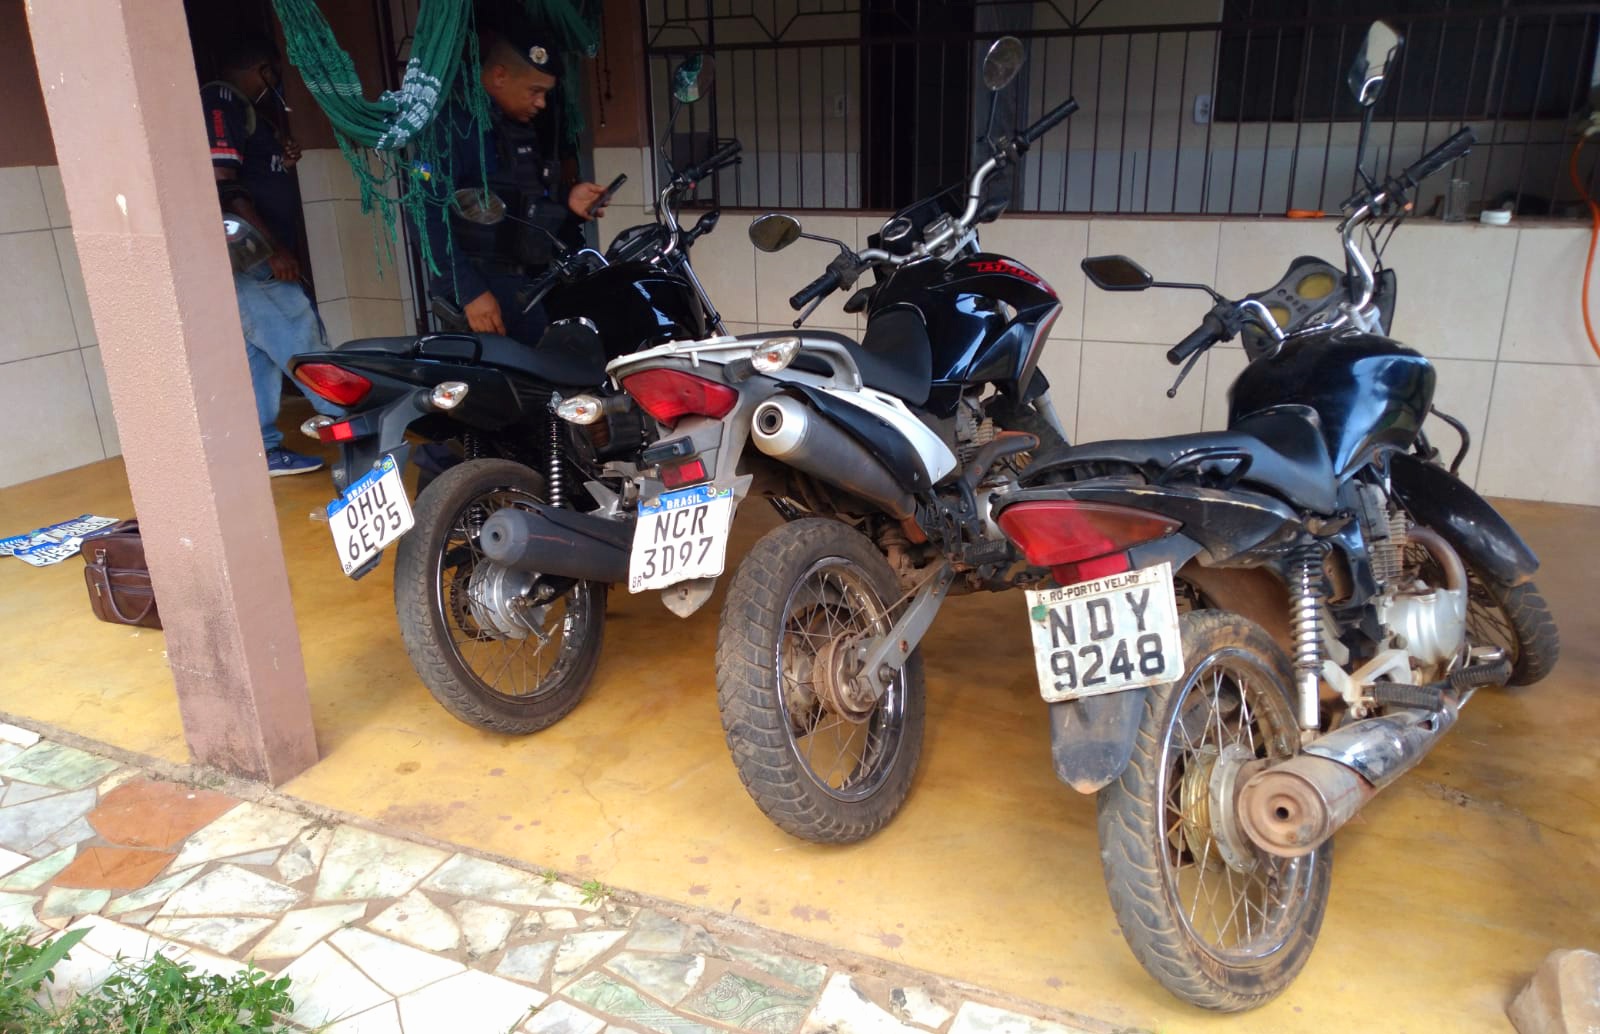 RASTREAMENTO: Cinco motos roubadas são encontradas em vila de apartamentos